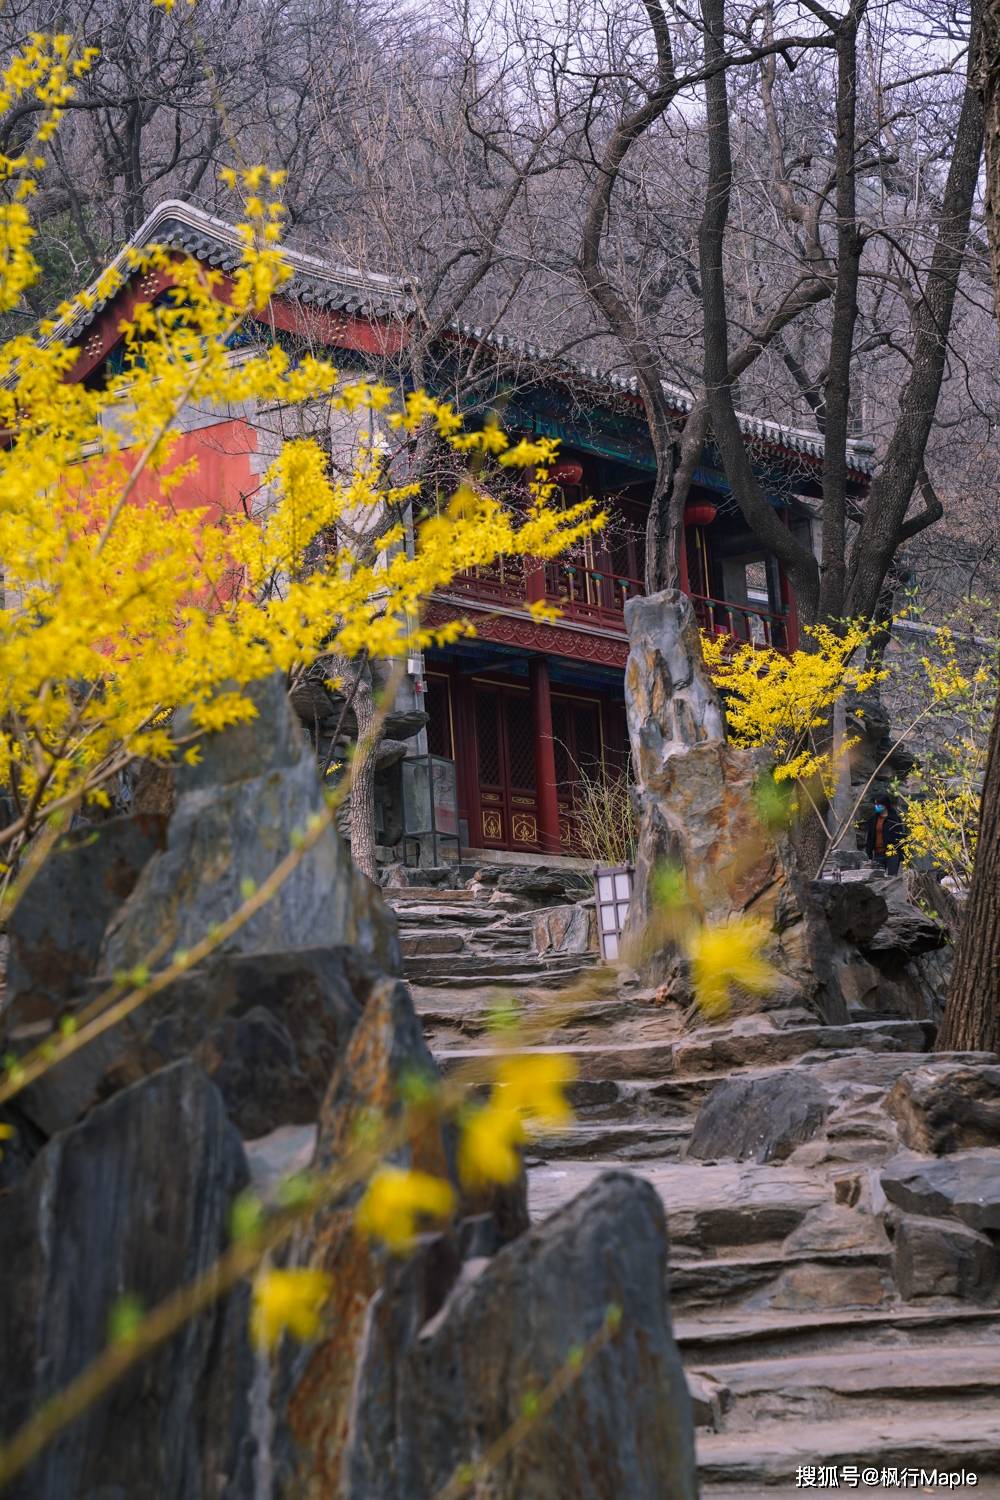 北京京西古刹大觉寺,不仅300年玉兰正开放,还有樱花正花期